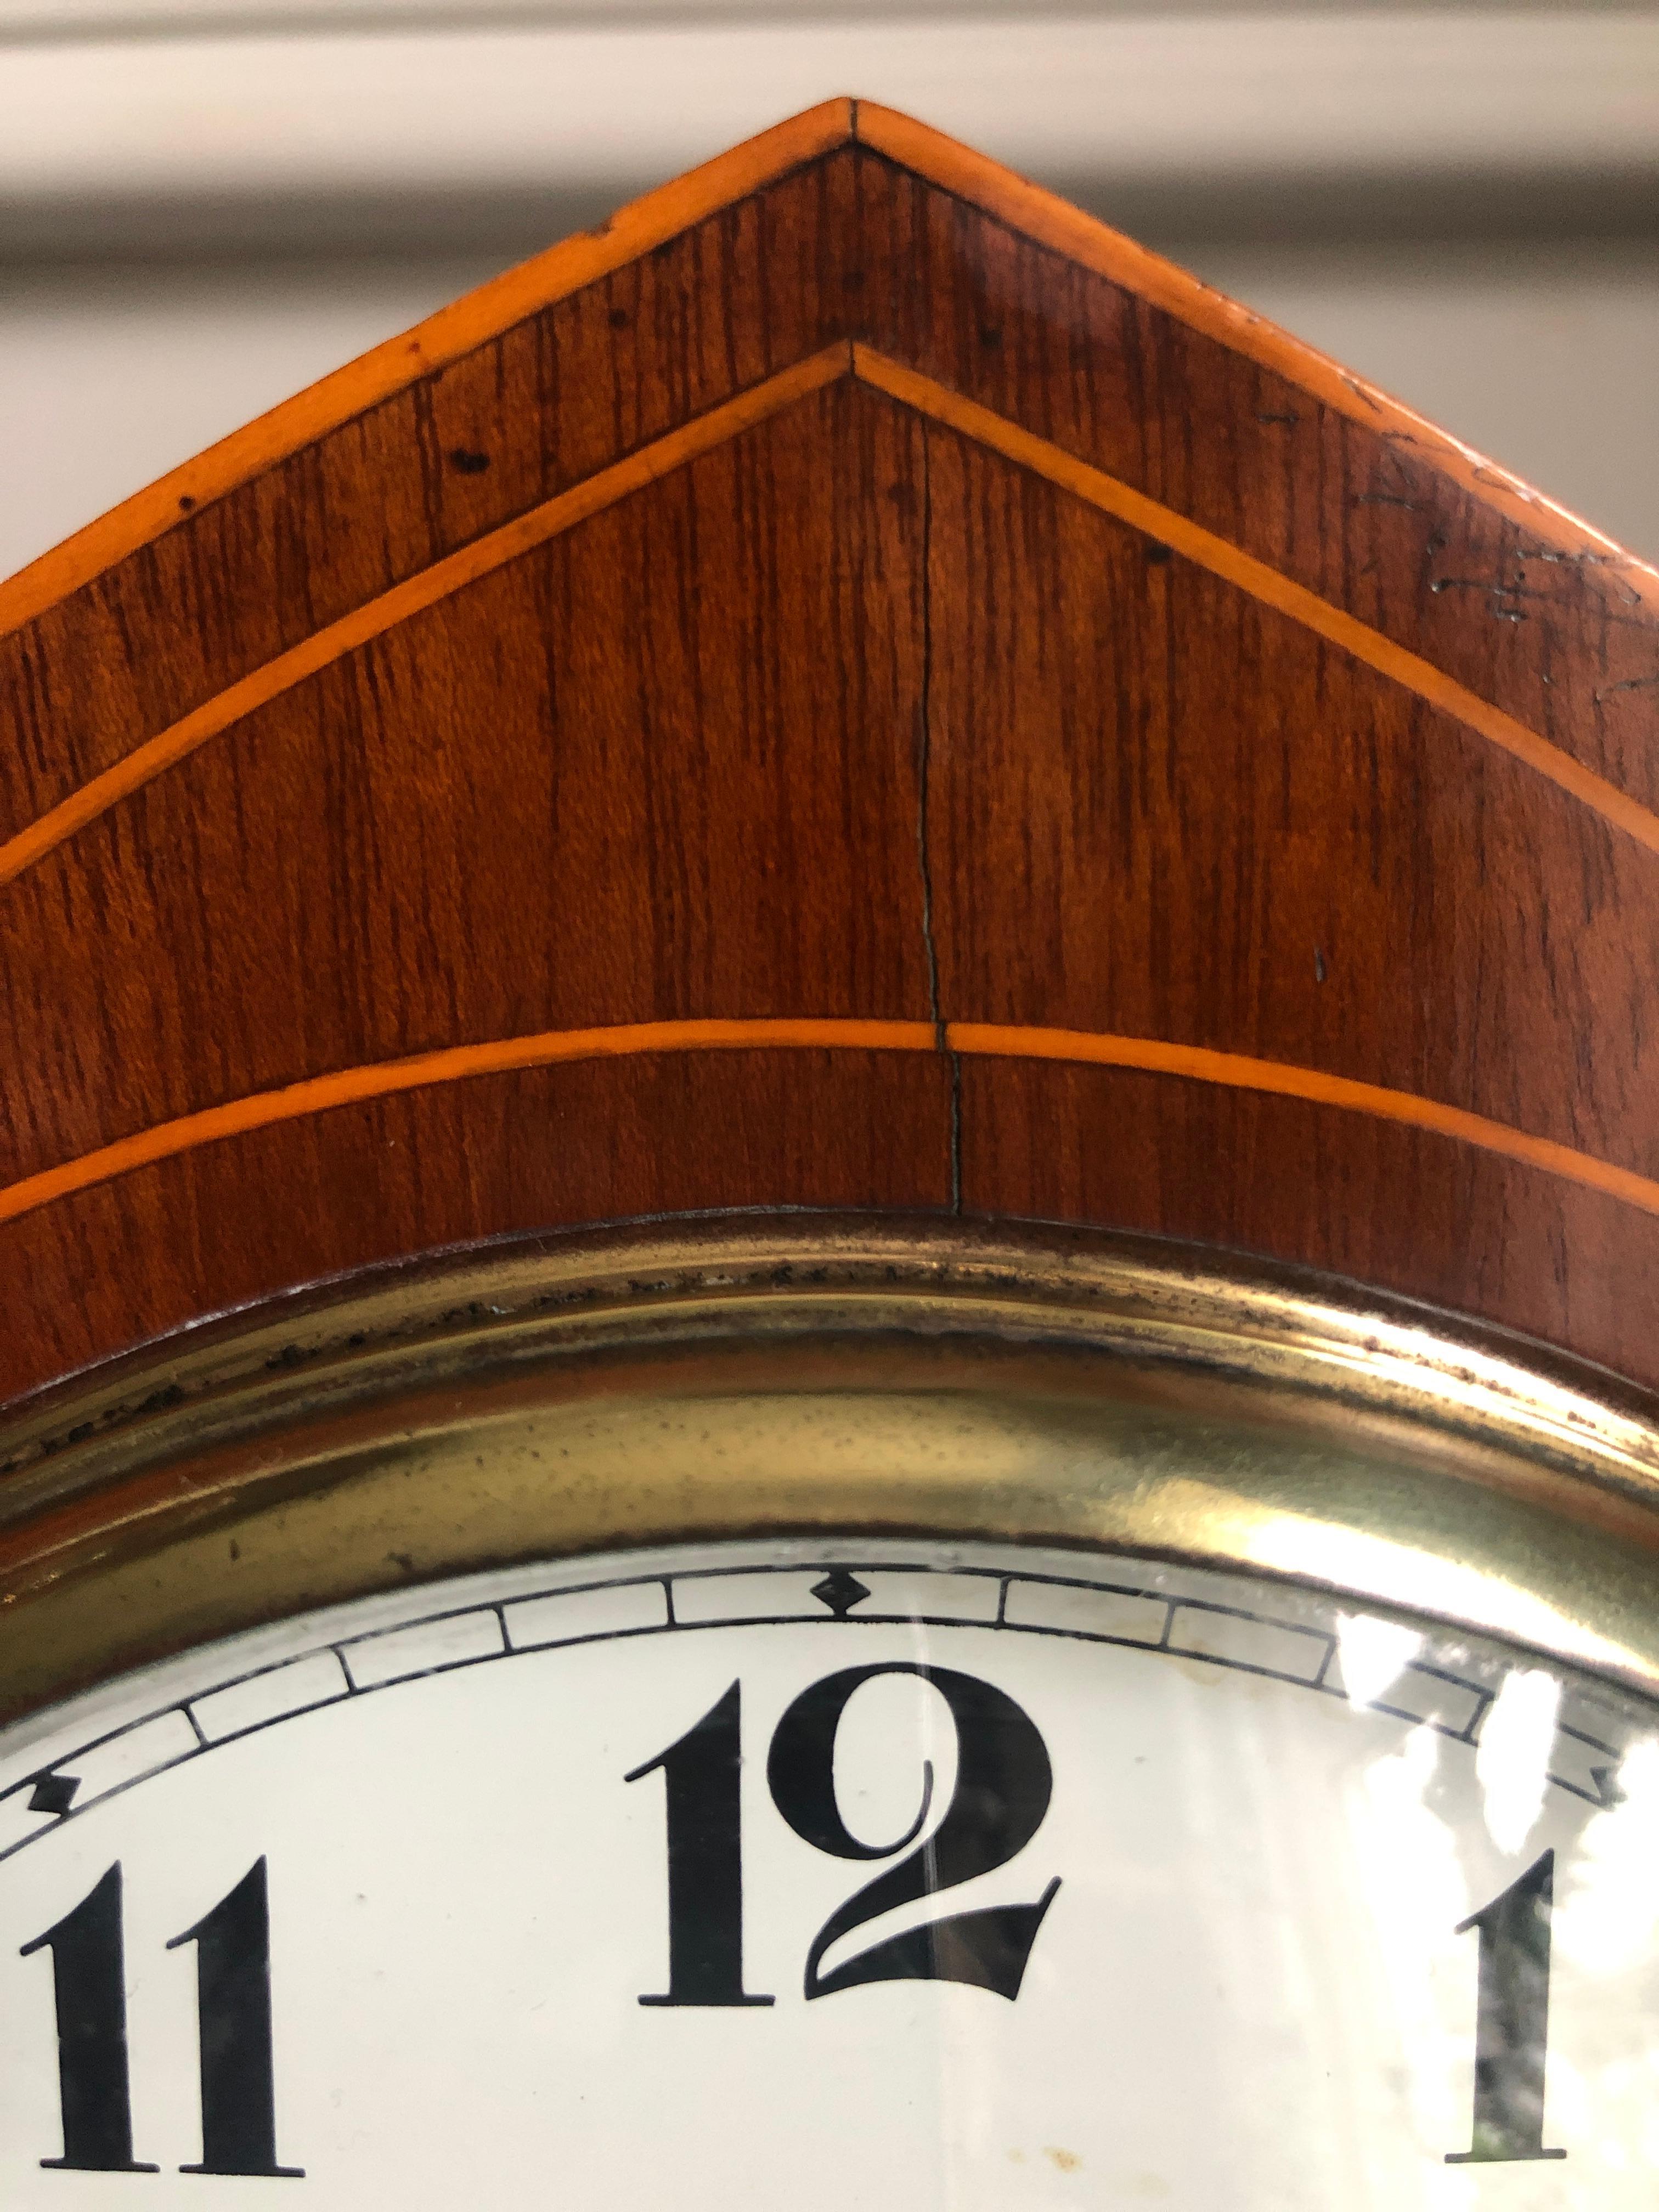 Antike Edwardian Mahagoni Lancet Top Mantel Uhr mit attraktiven eingelegten Buchsbaum Stringing und einem Satinholz Fan Intarsie auf der Vorderseite des Gehäuses. Das französische Uhrwerk hat ein weißes Emailzifferblatt und die antike Uhr schlägt